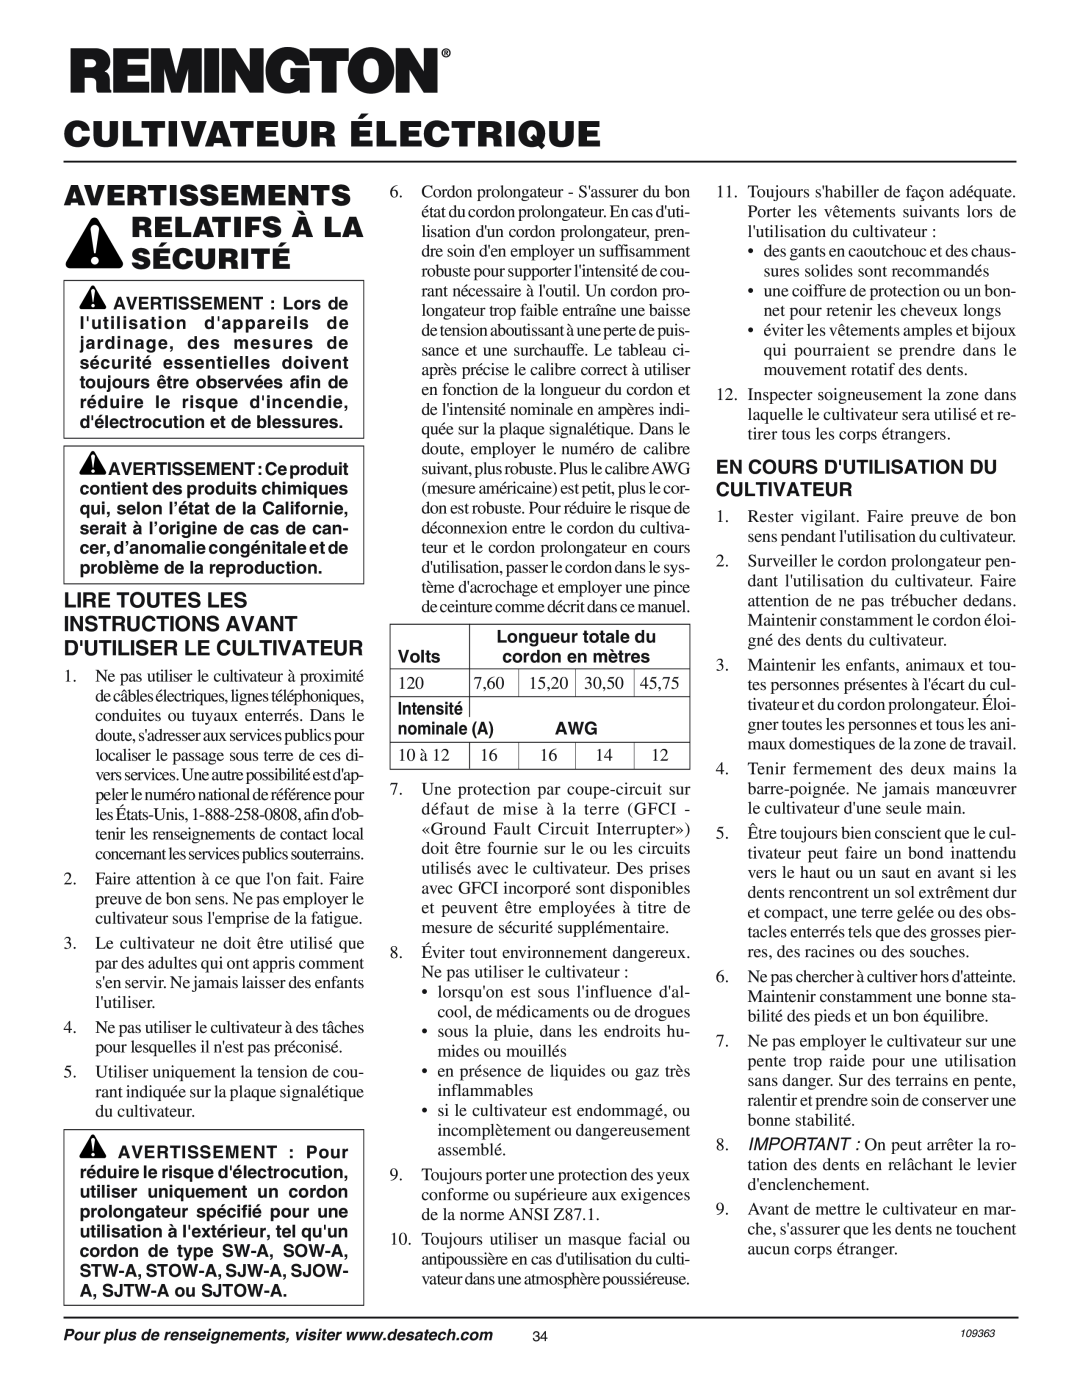 Remington 109312-01 Cultivateur Électrique, Avertissements Relatifs À La Sécurité, En Cours Dutilisation Du Cultivateur 